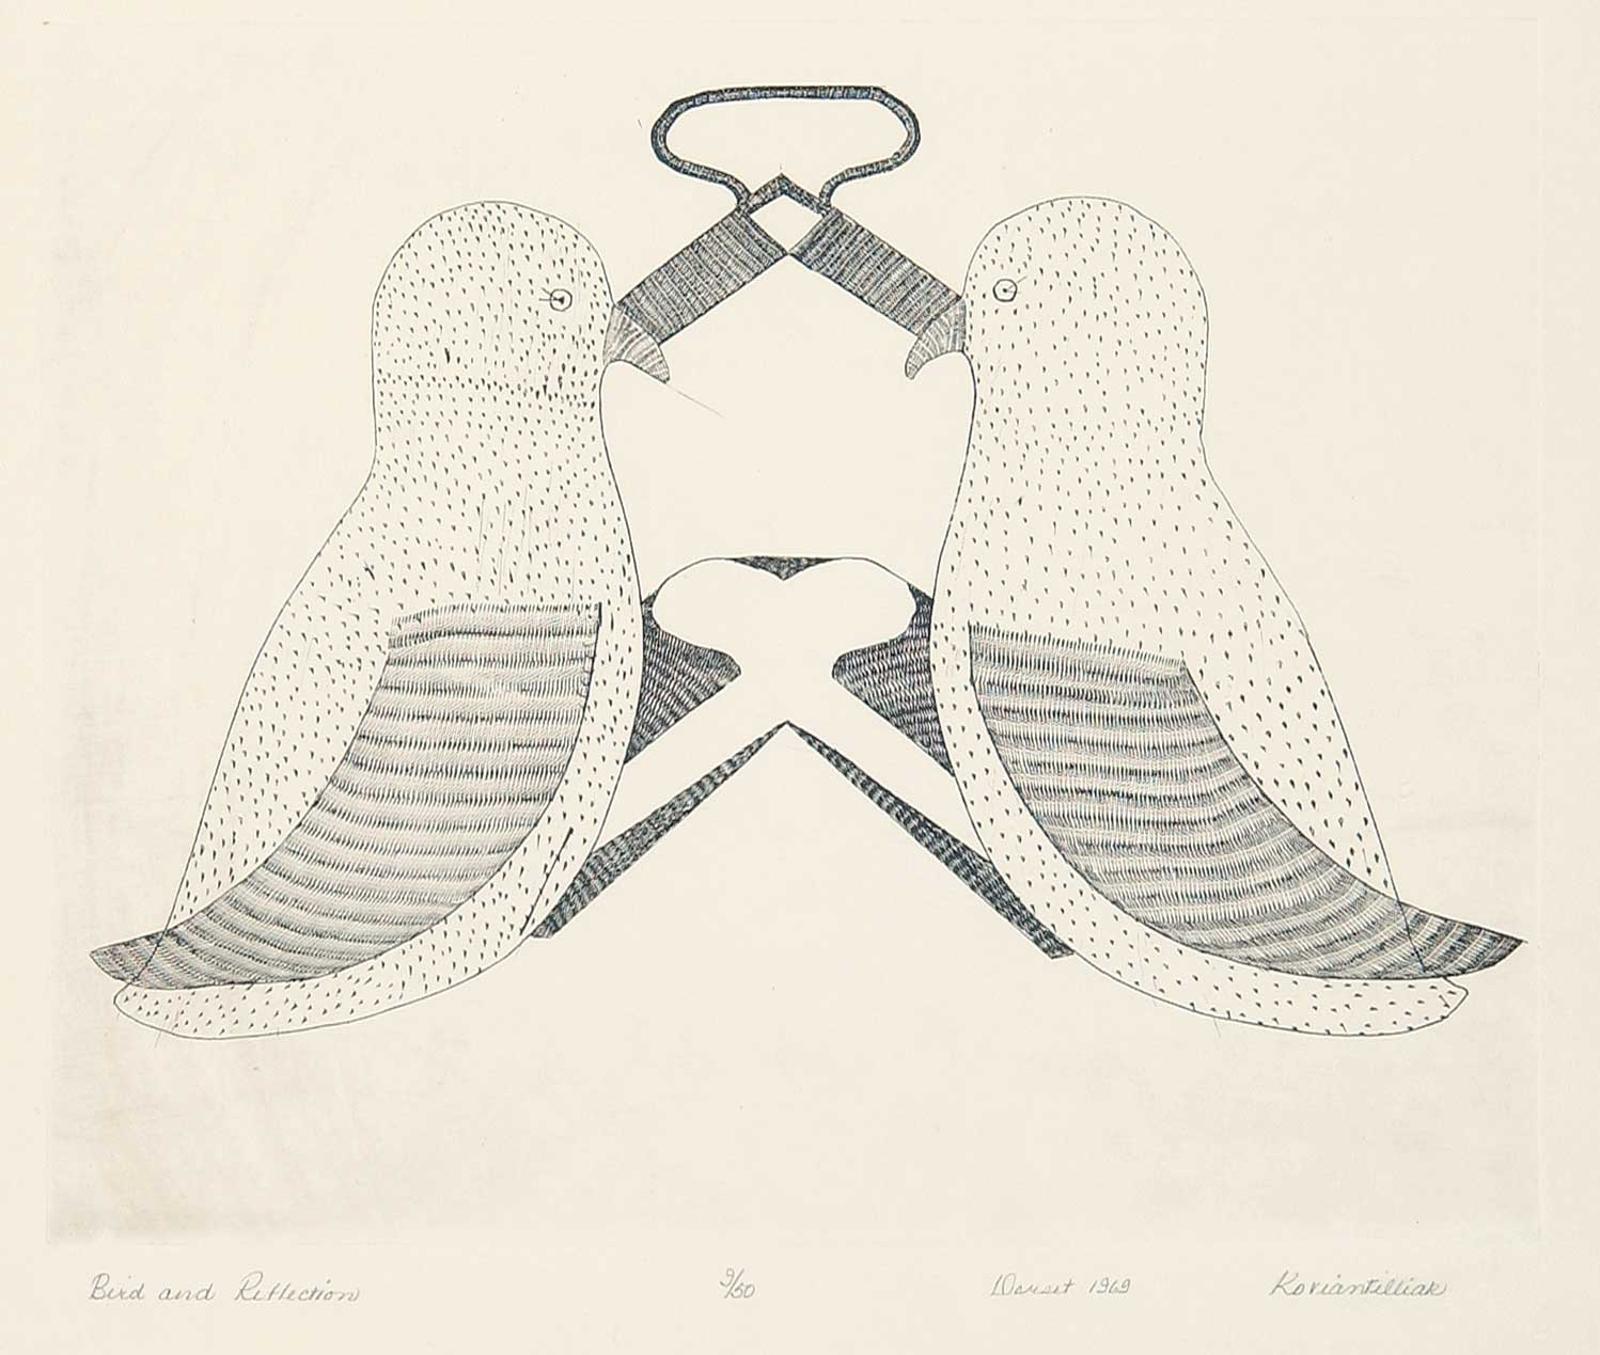 Koviantilliak Inuit - Bird and Reflection  #9/50